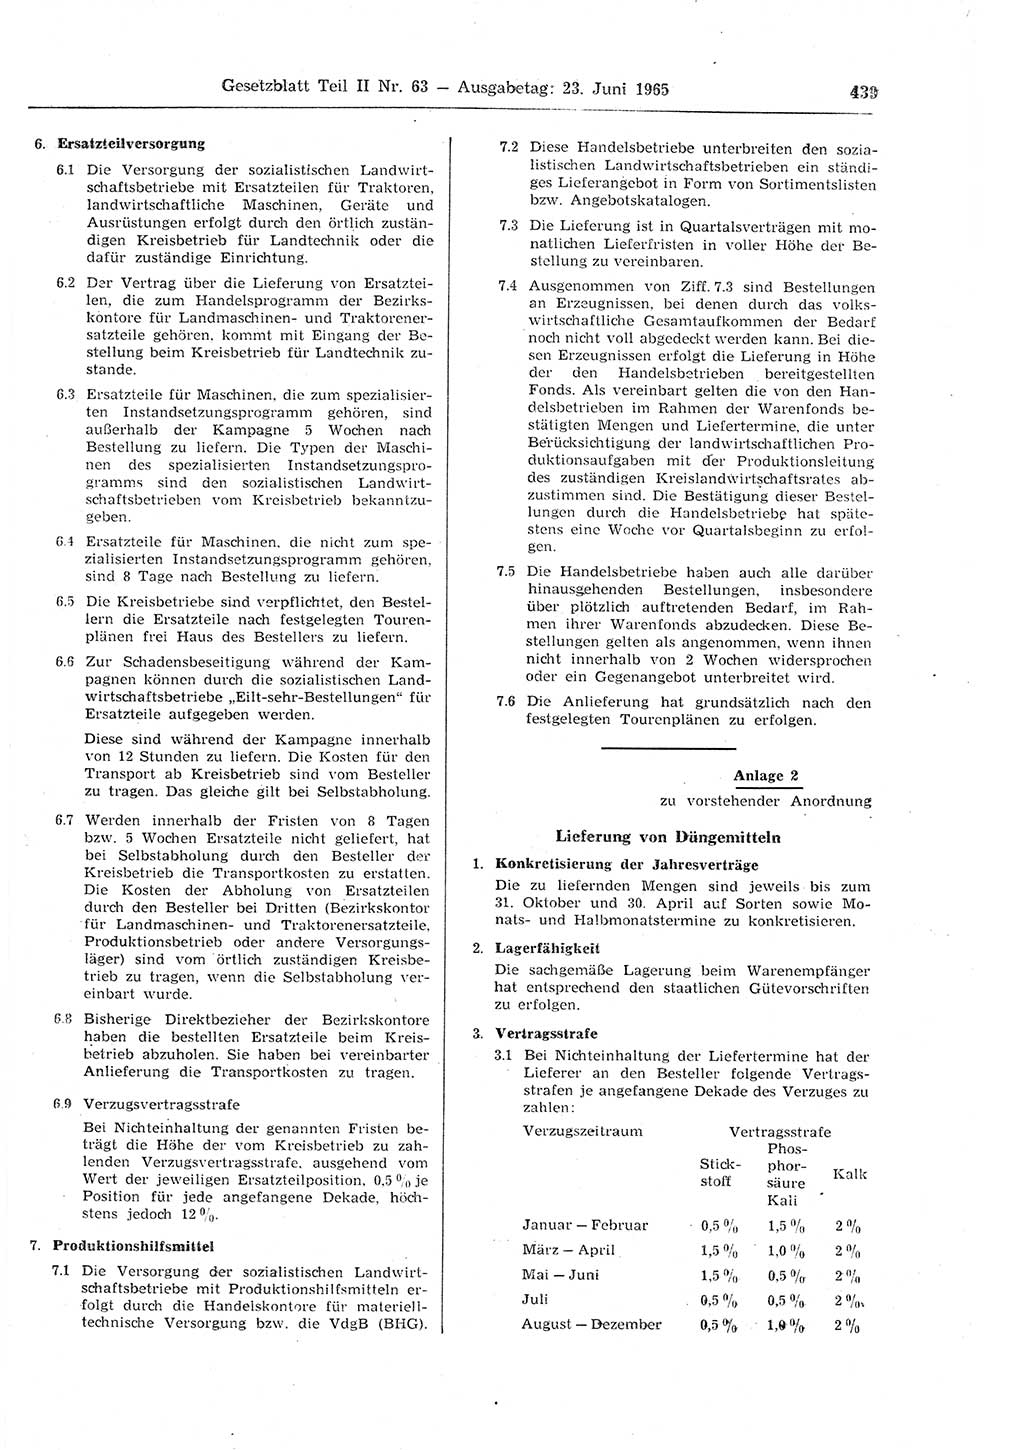 Gesetzblatt (GBl.) der Deutschen Demokratischen Republik (DDR) Teil ⅠⅠ 1965, Seite 439 (GBl. DDR ⅠⅠ 1965, S. 439)